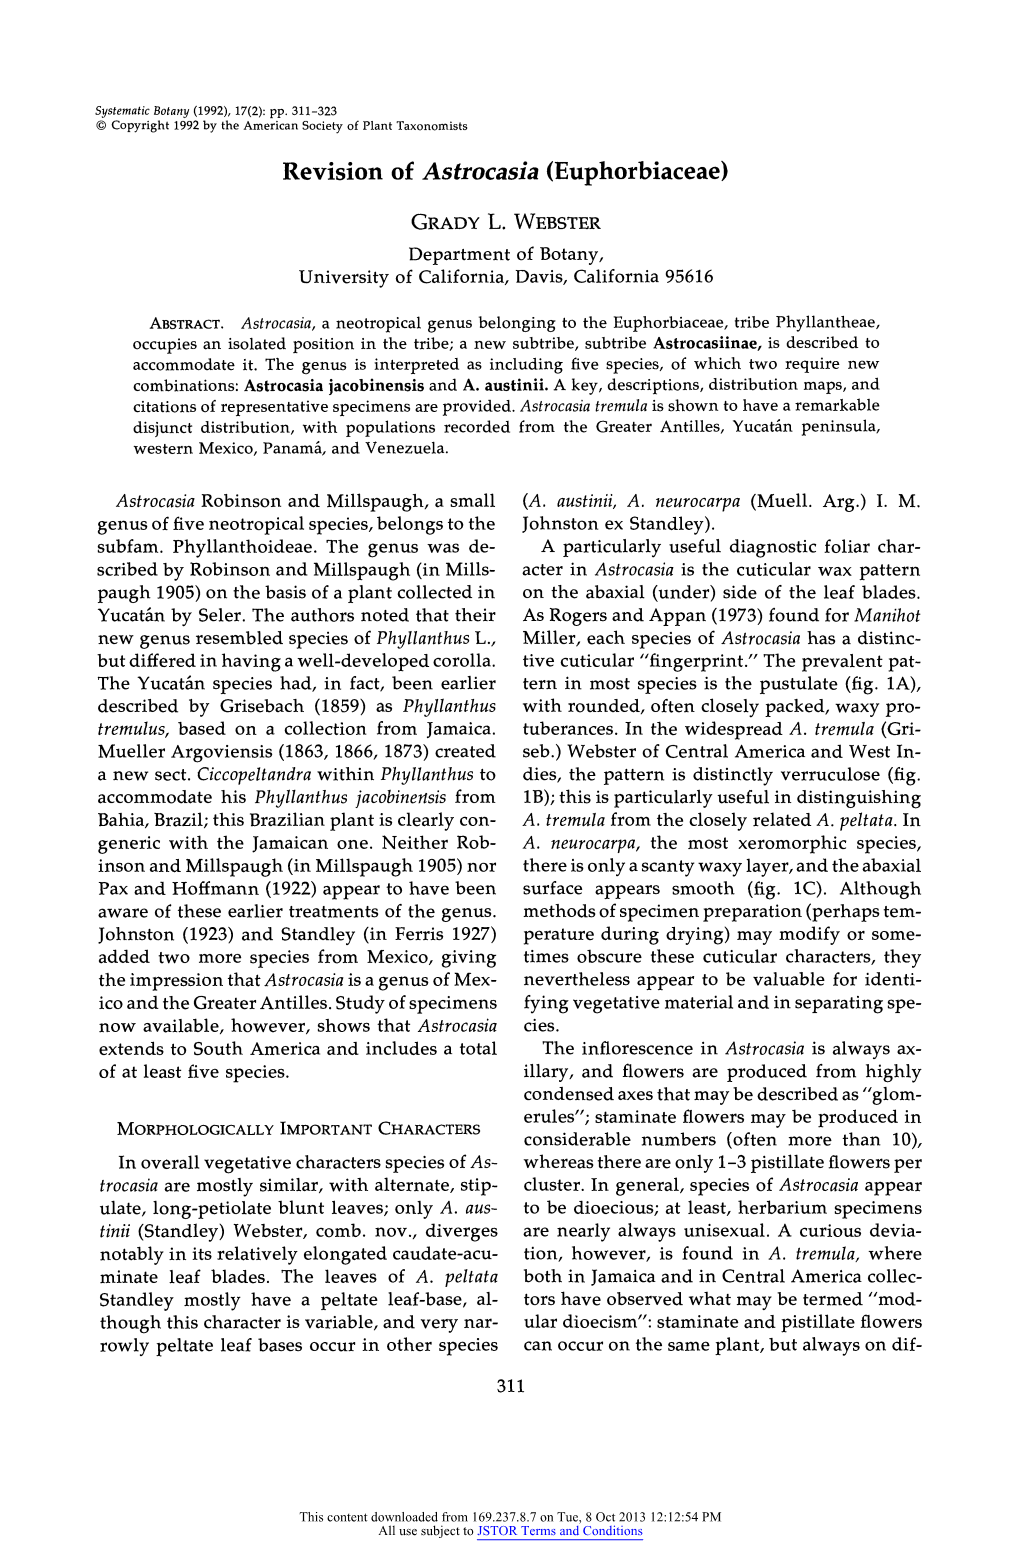 Revision of Astrocasia (Euphorbiaceae)